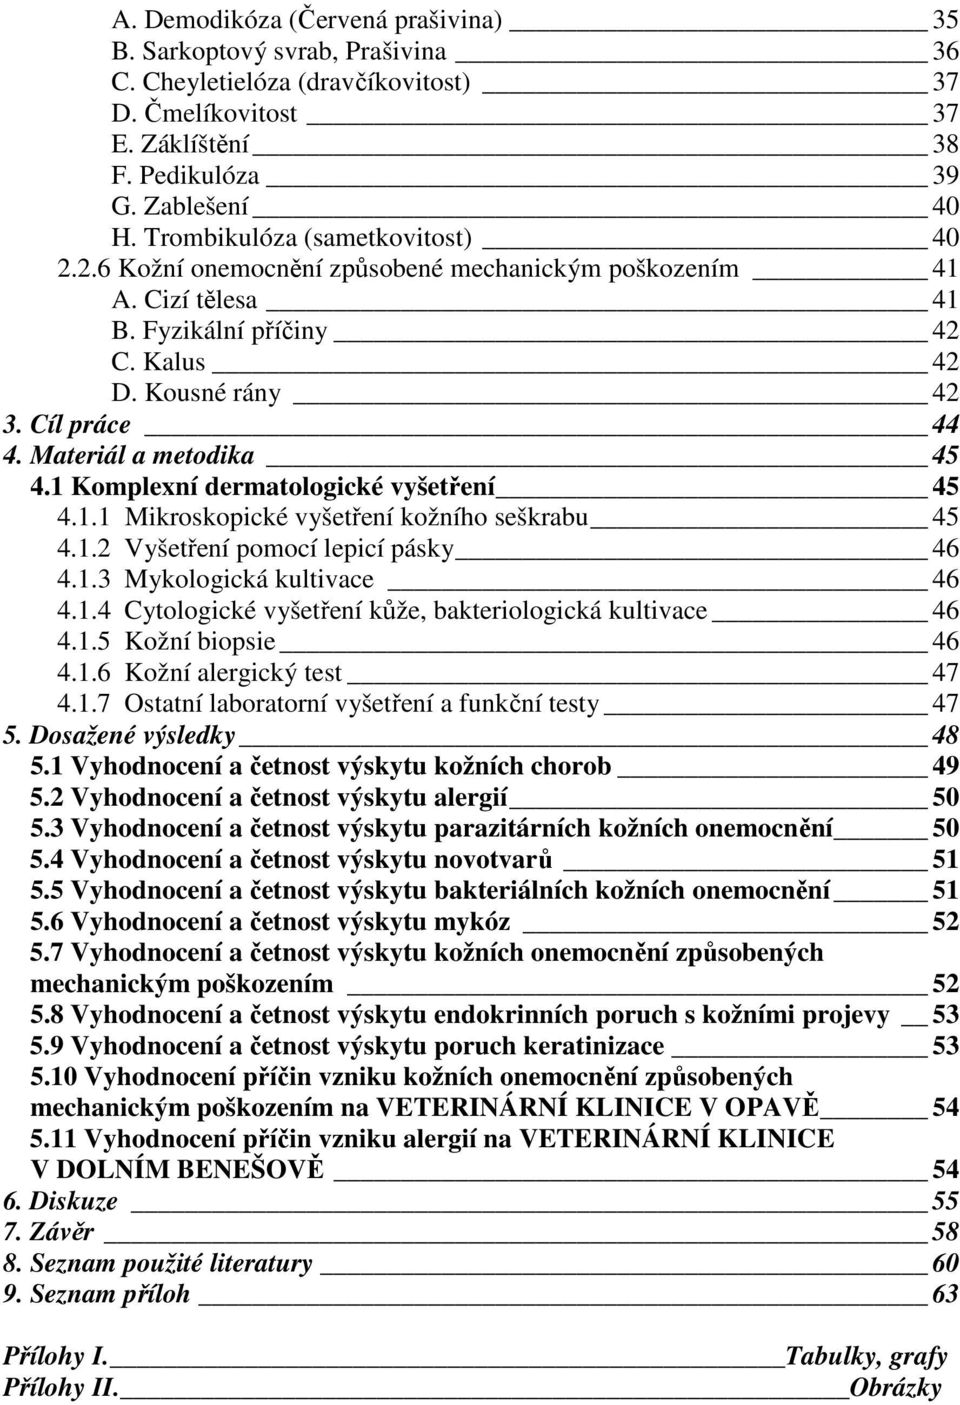 Materiál a metodika 45 4.1 Komplexní dermatologické vyšetření 45 4.1.1 Mikroskopické vyšetření kožního seškrabu 45 4.1.2 Vyšetření pomocí lepicí pásky 46 4.1.3 Mykologická kultivace 46 4.1.4 Cytologické vyšetření kůže, bakteriologická kultivace 46 4.